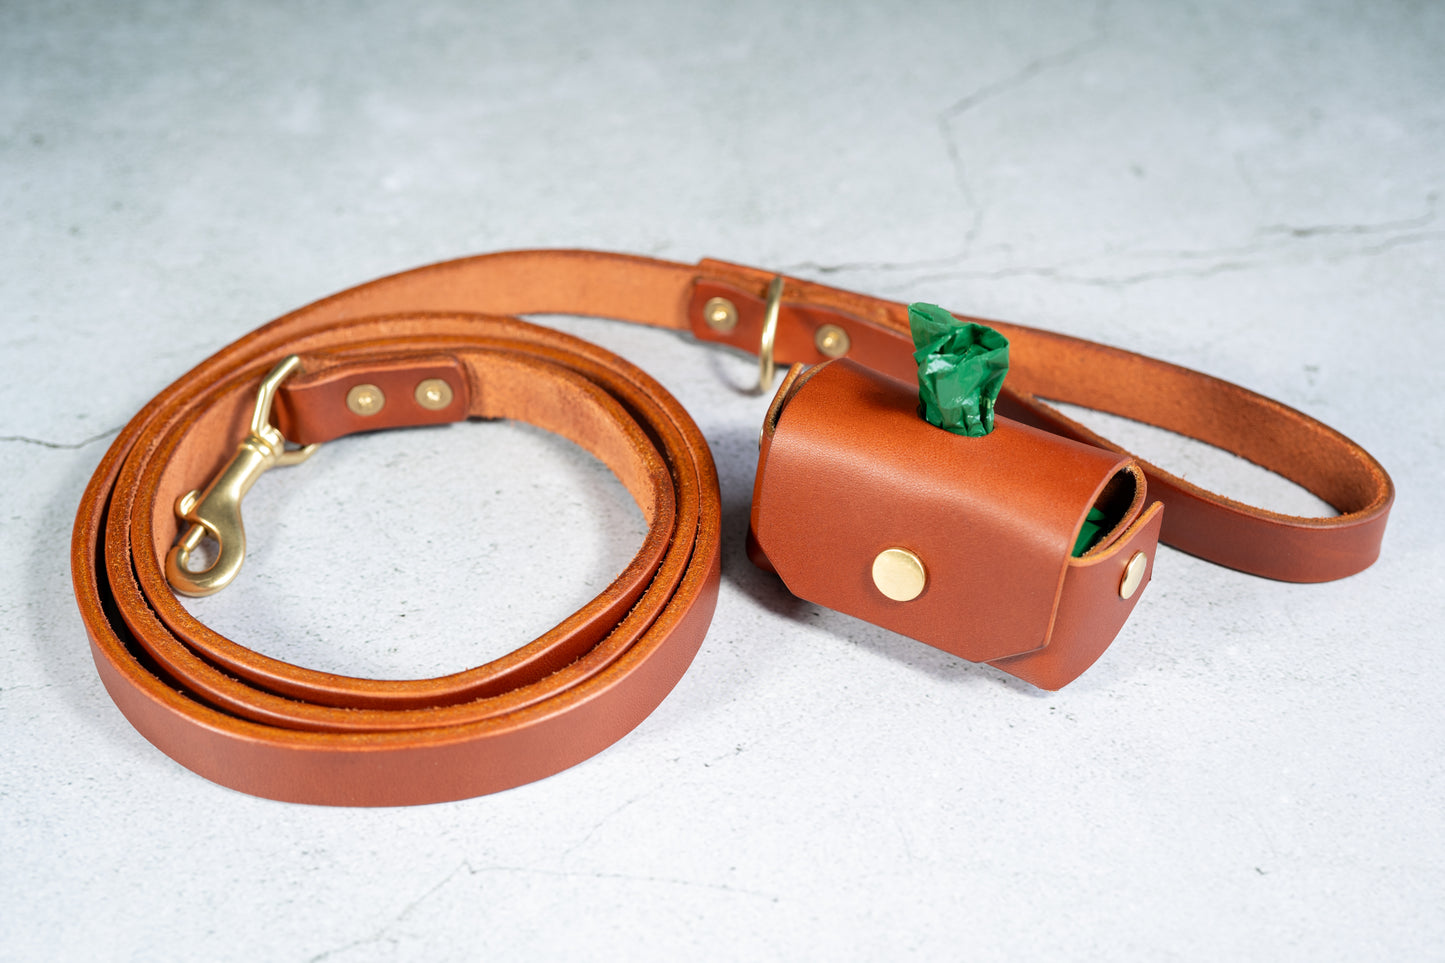 High quality handmade chestnut leather dog leash and poop bag holder set.